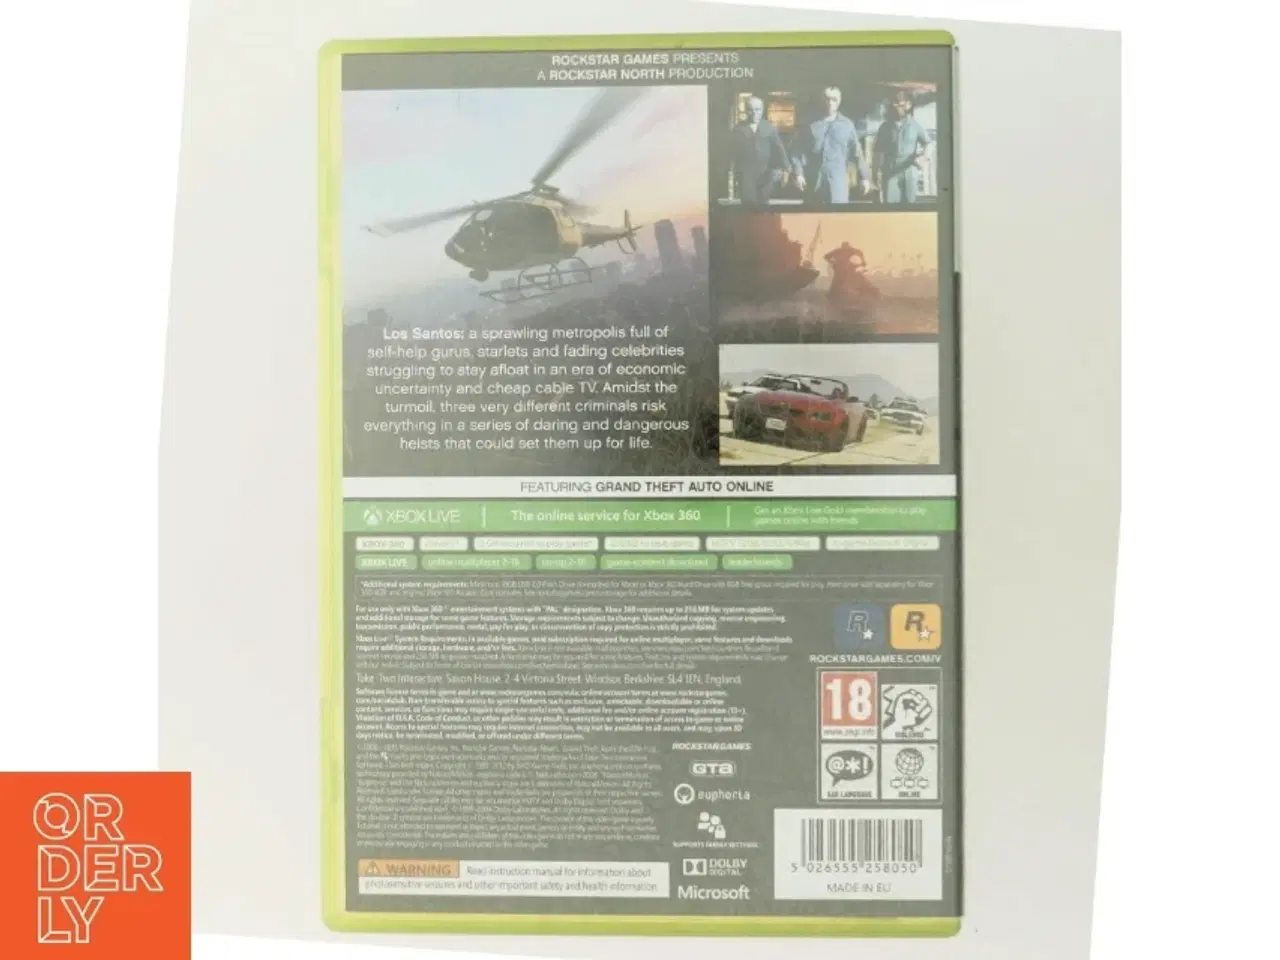 Billede 3 - Grand Theft Auto V (GTA 5) til Xbox 360 fra Rockstar Games